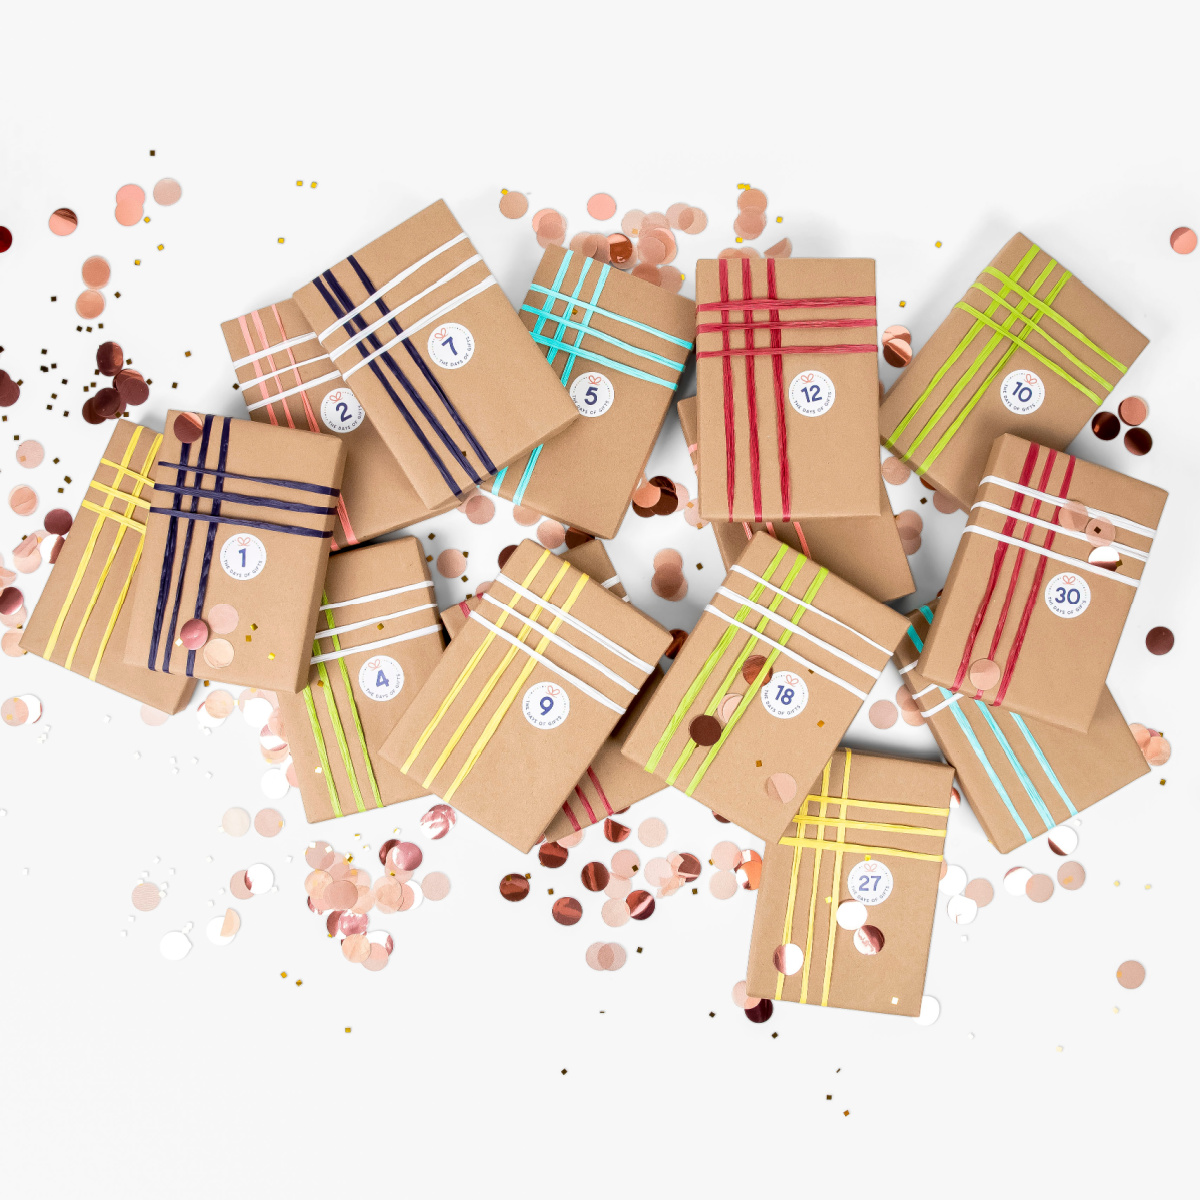 Pin by Erica Lapera on birthday ideas | Skittles gift, Happy birthday cards  diy, Happy birthday cards